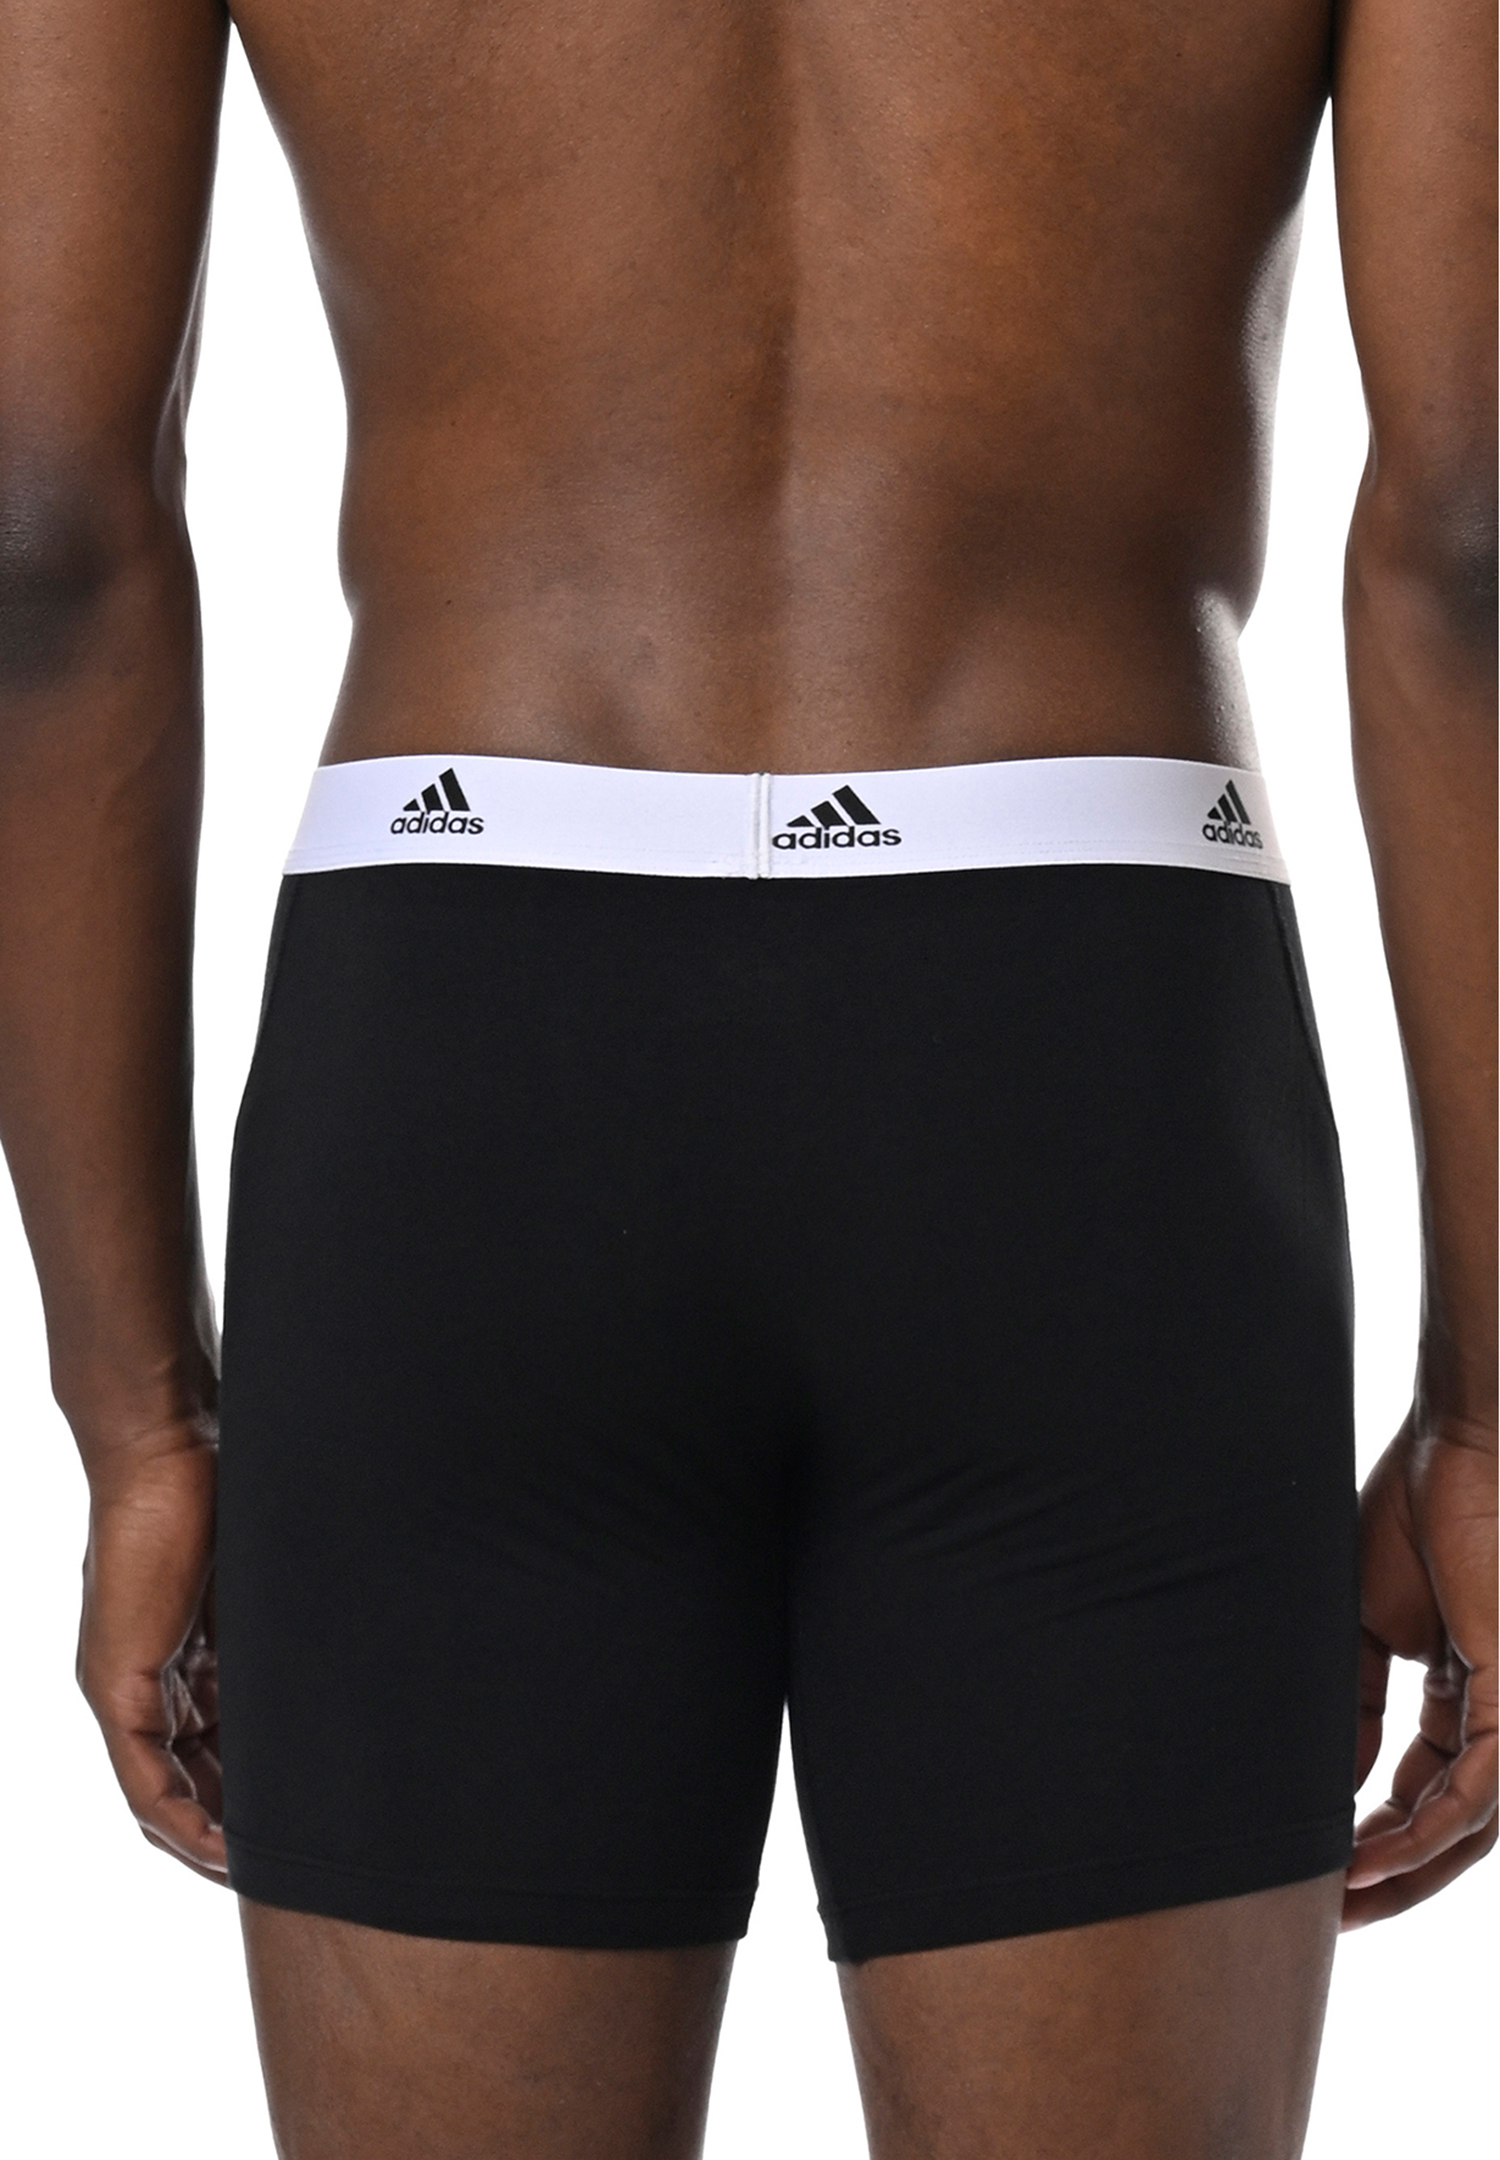 Adidas Basic Boxer Brief Men Herren Unterhose Shorts Unterwäsche 3er Pack  